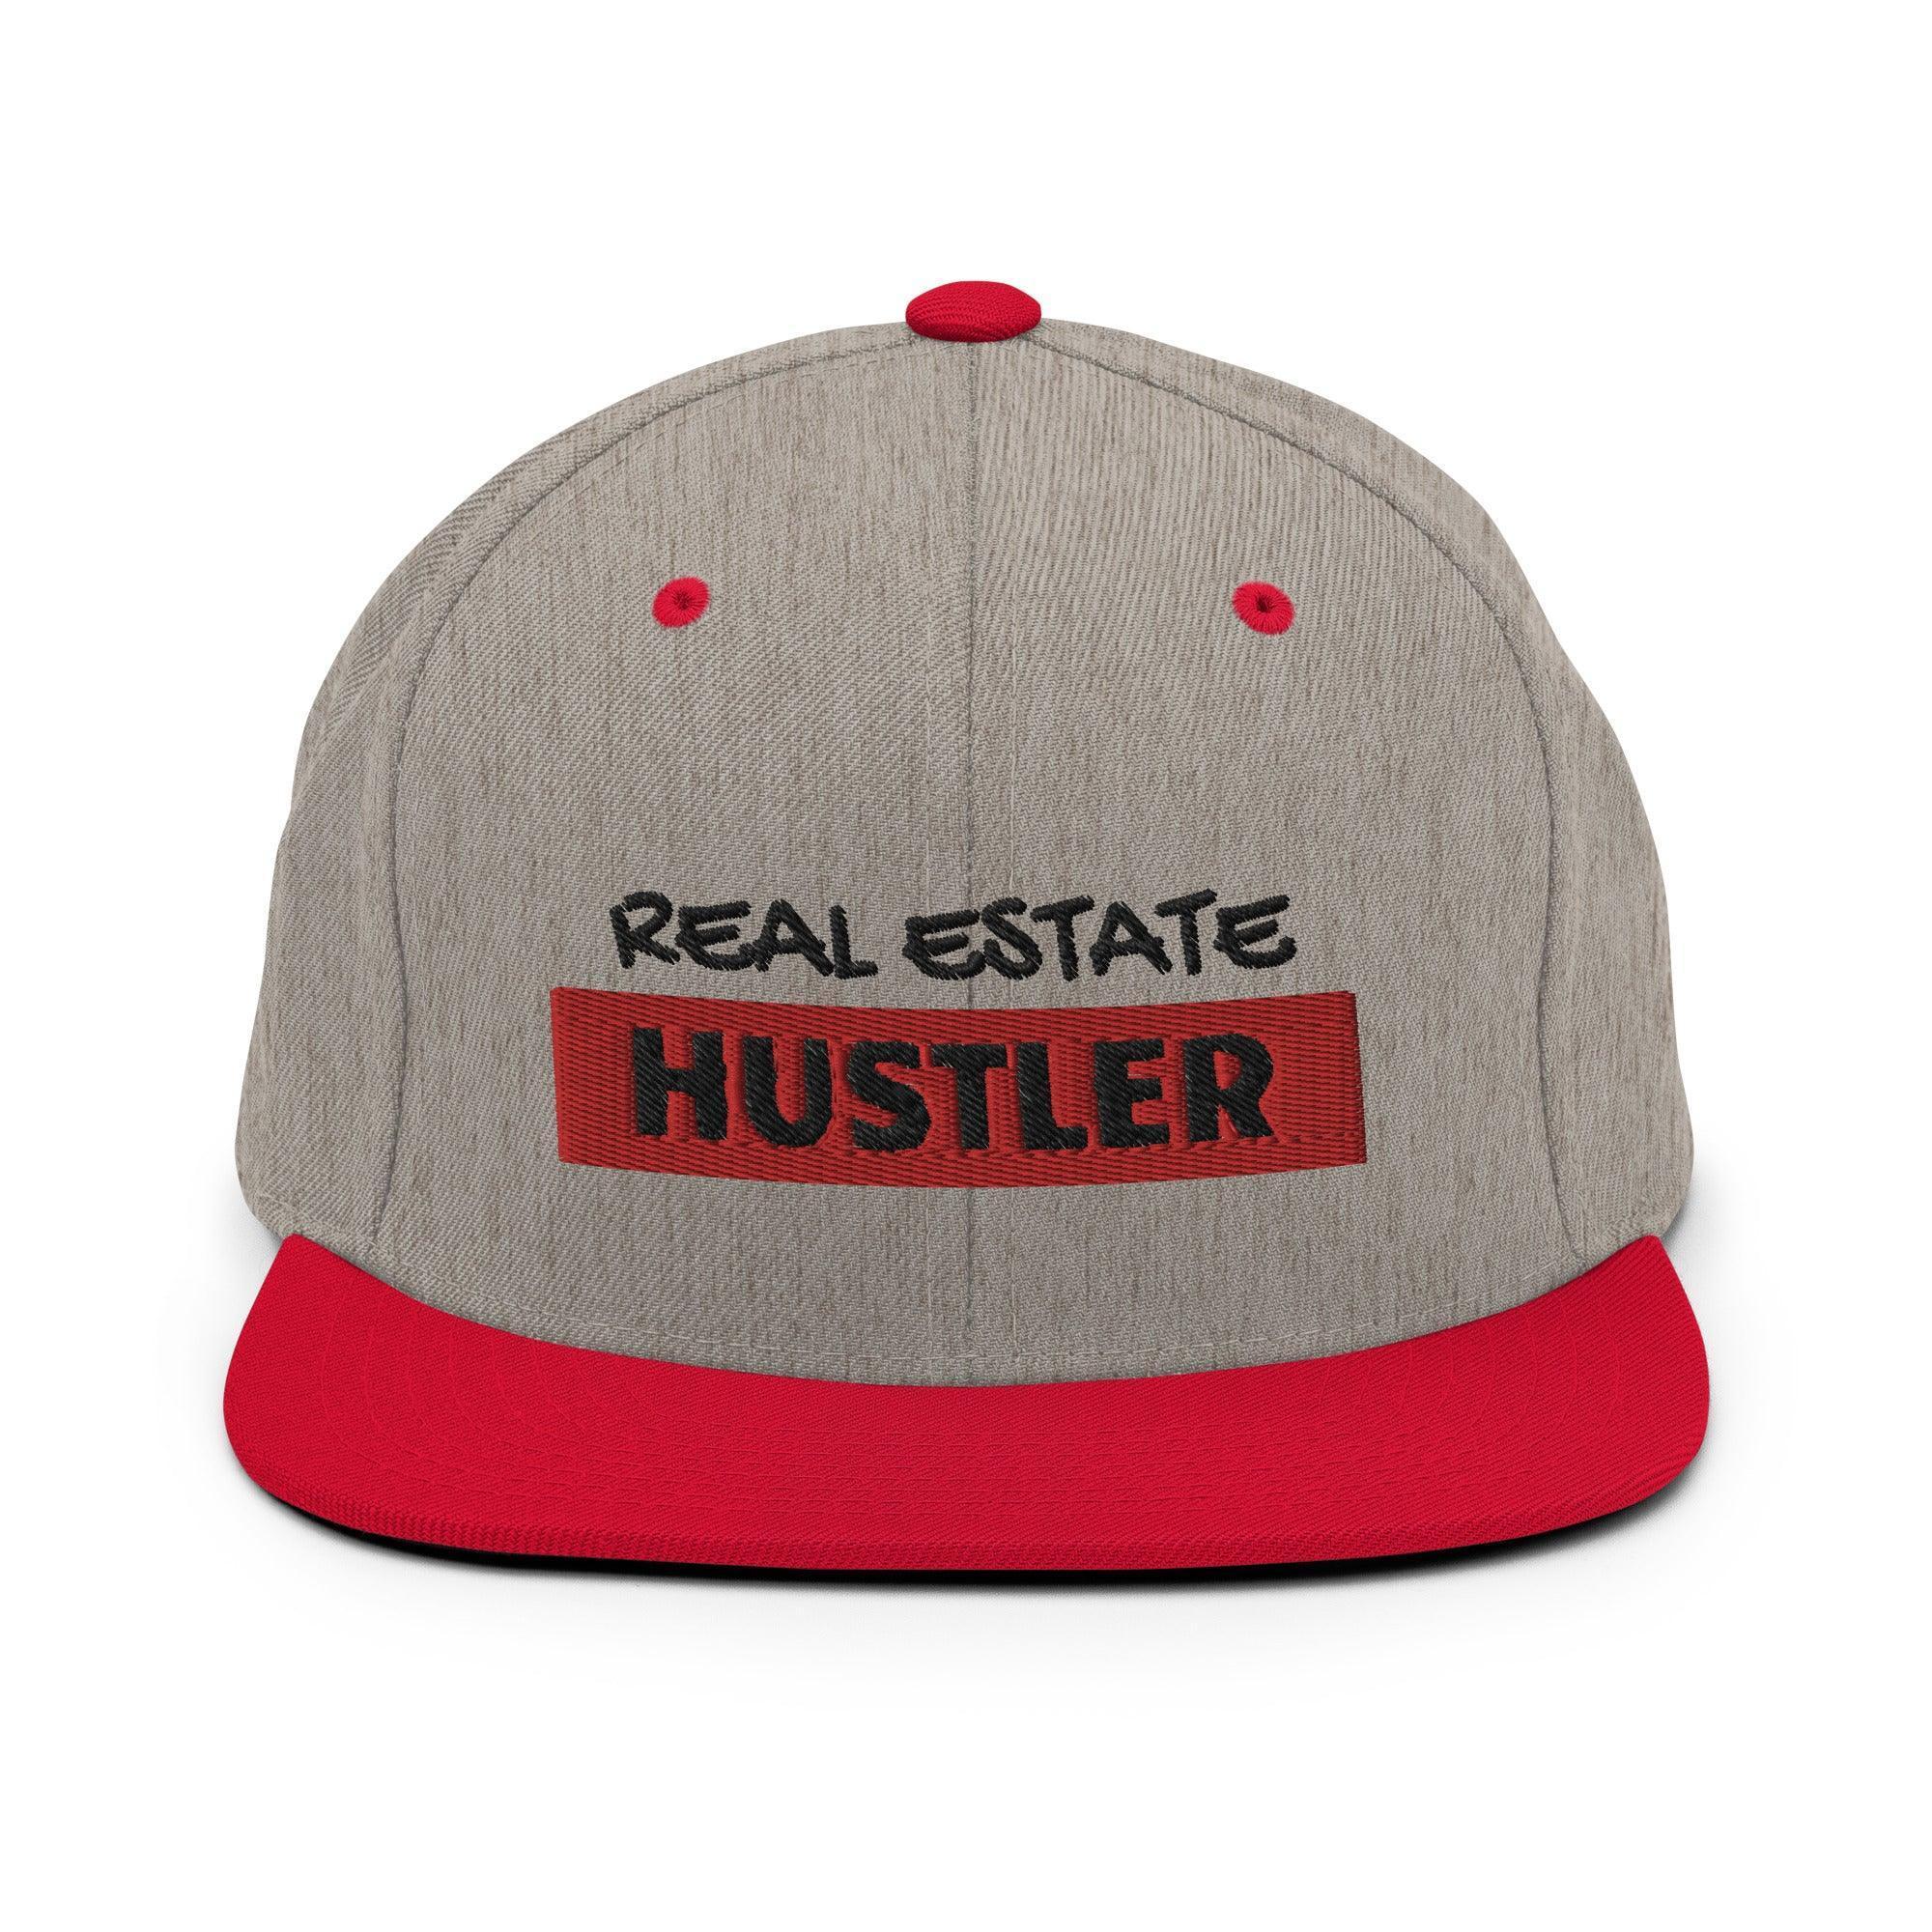 Real Estate Hustler Snapback Hat - InvestmenTees